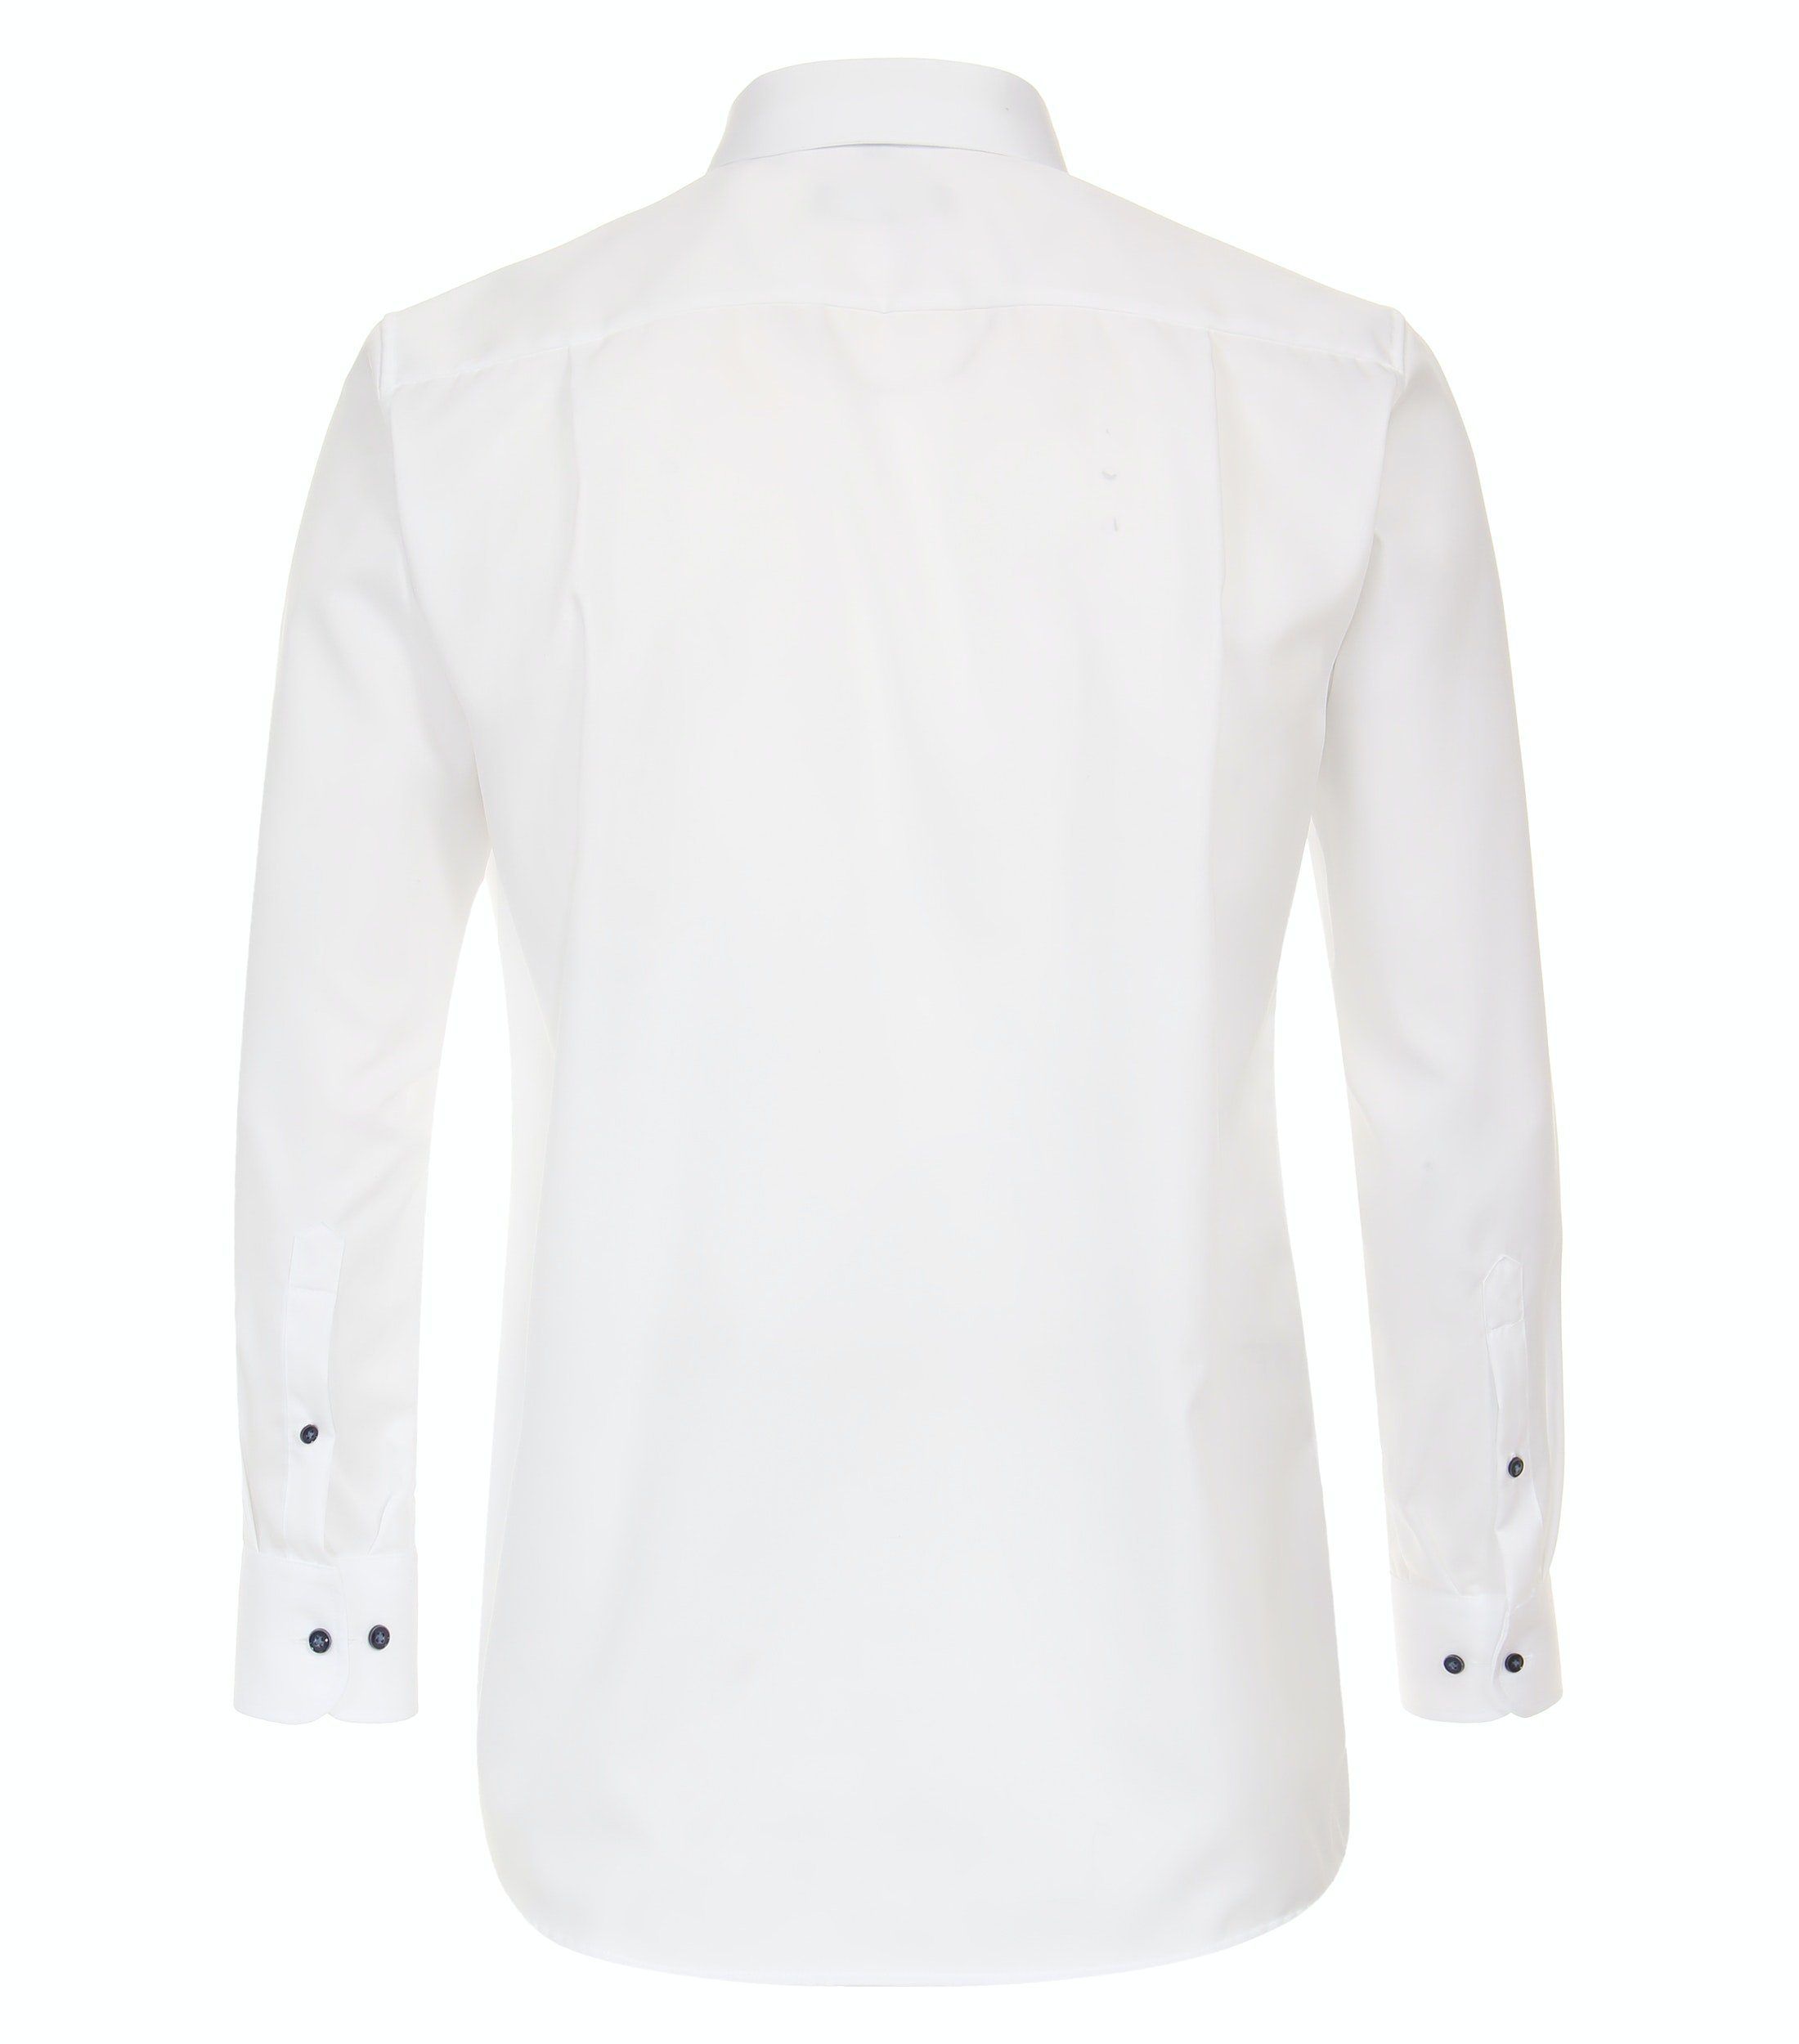 Weiß (000) - CASAMODA - - Langarm Businesshemd Weiß Comfort - Fit Einfarbig Businesshemd